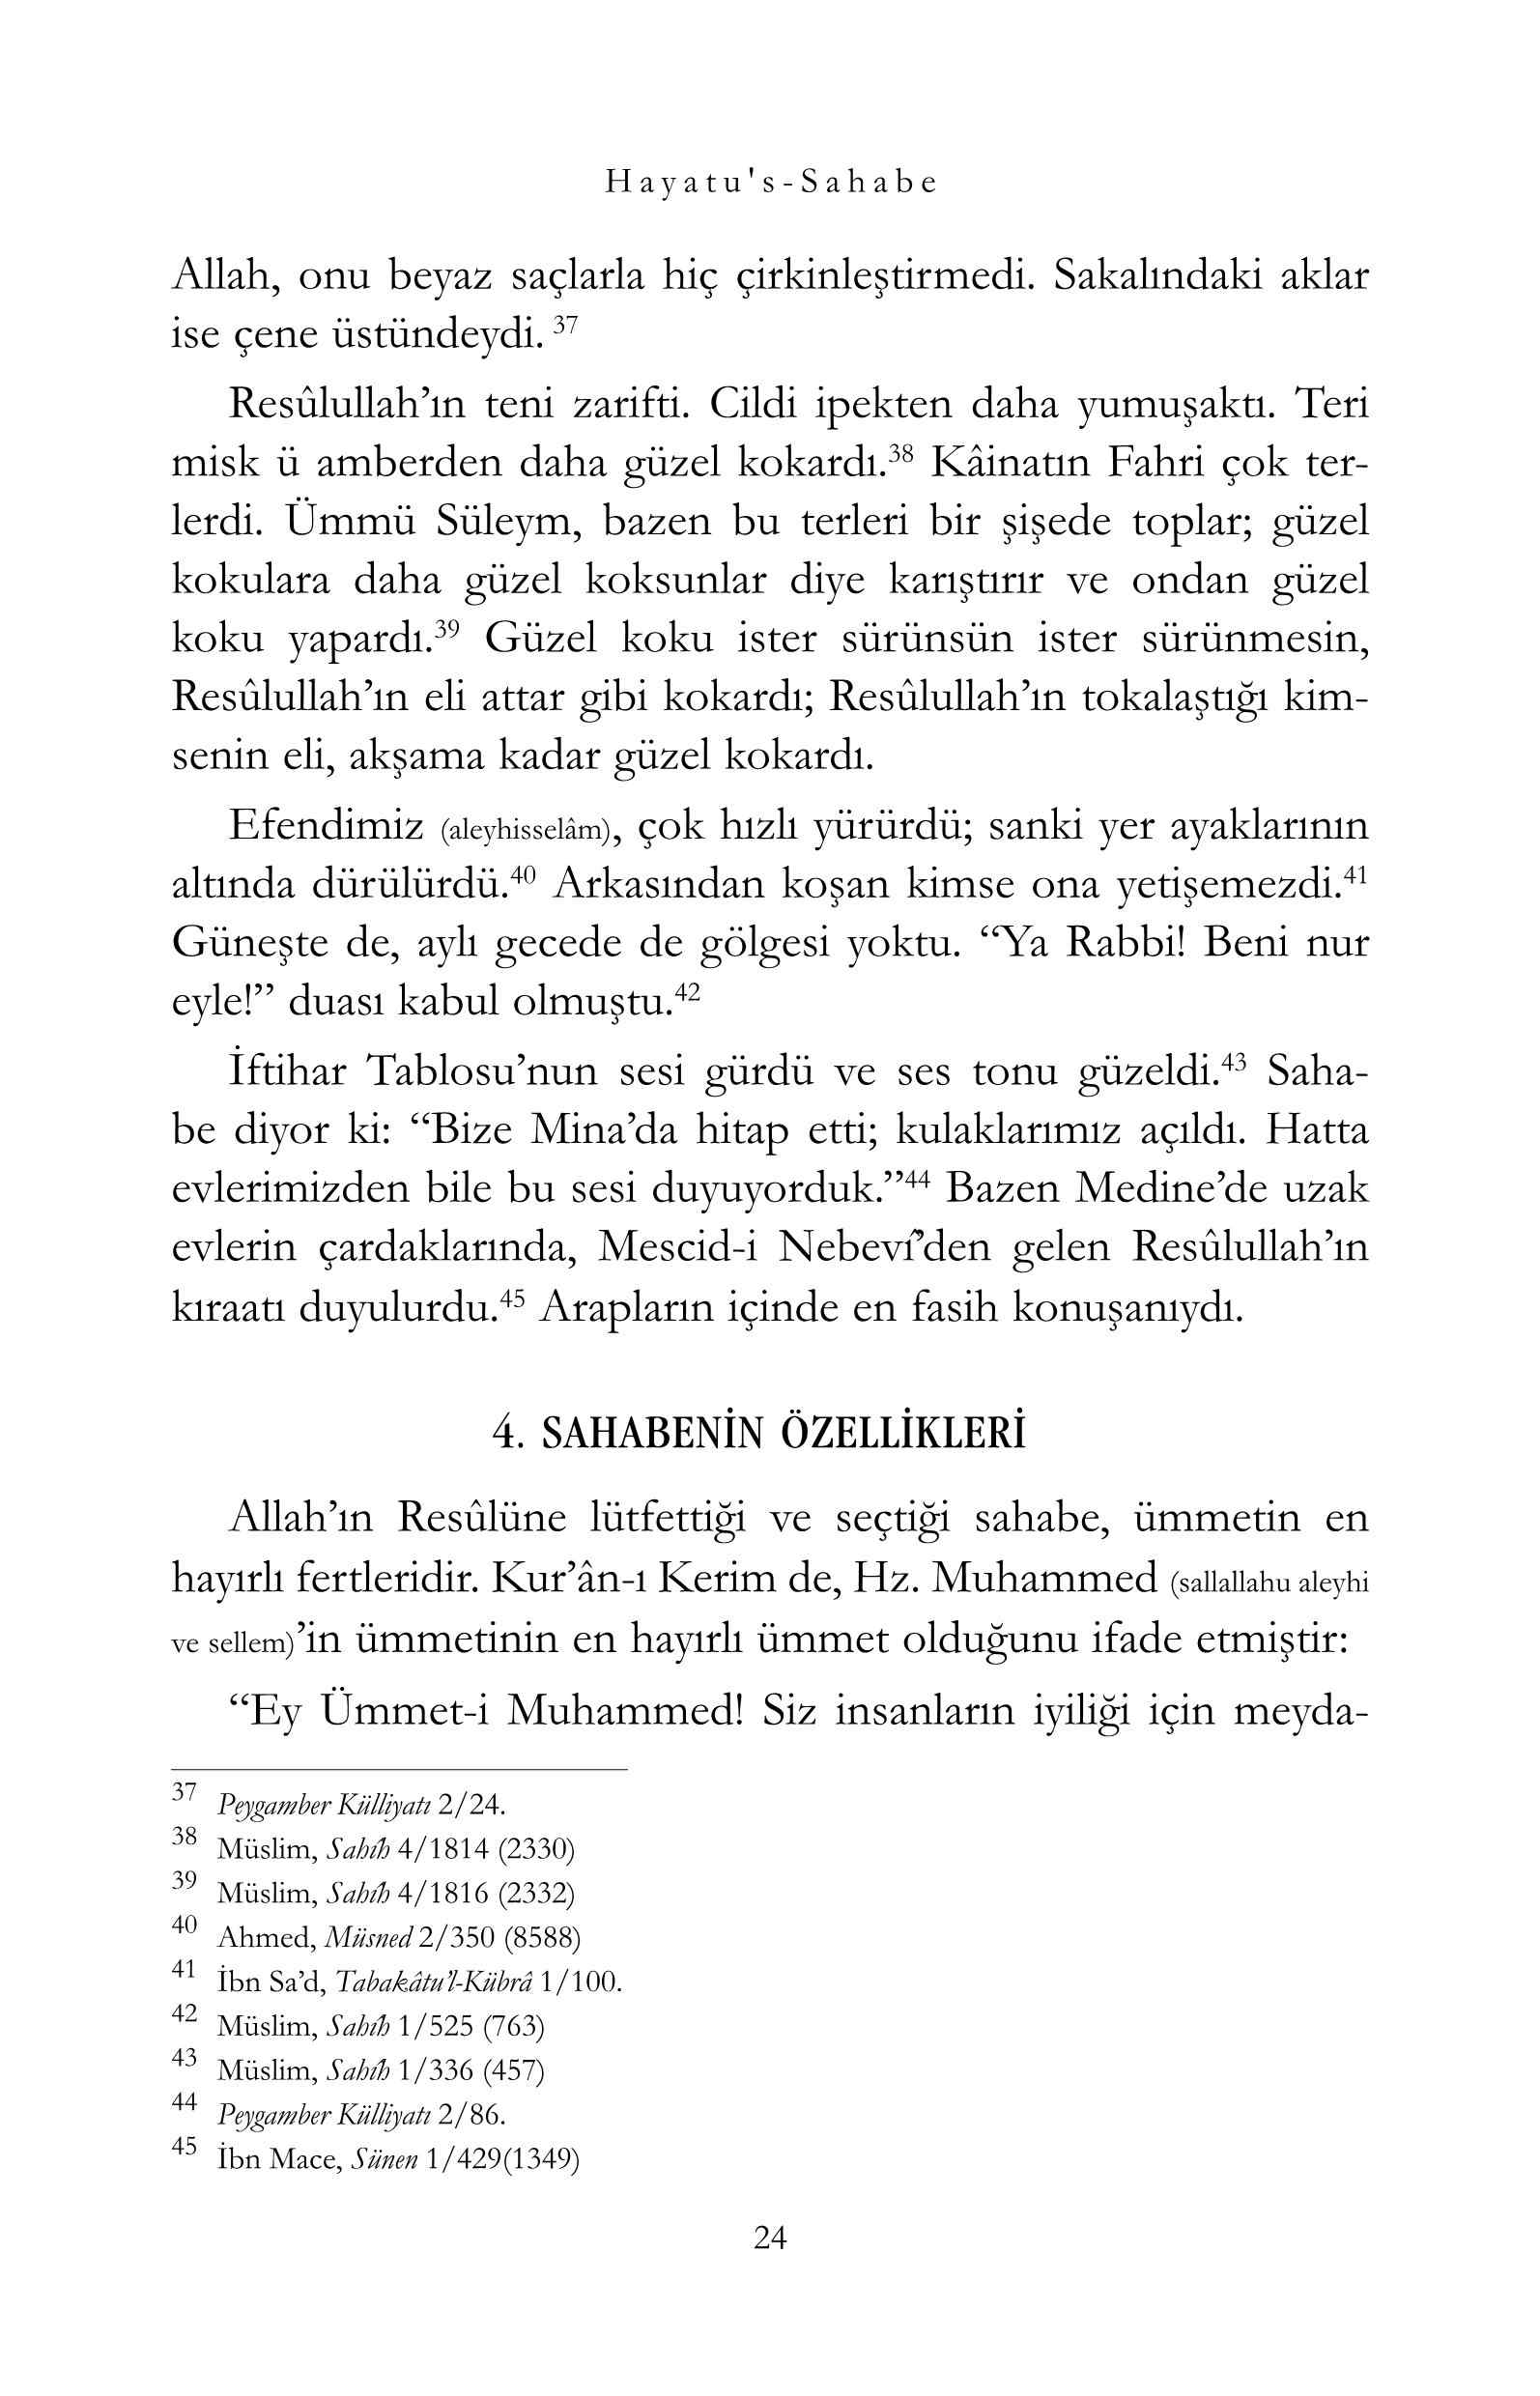 M Yusuf Kandehlevi - Hayatus Sahabe - Muhtasar Cilt-1 - IsikYayinlari.pdf, 497-Sayfa 